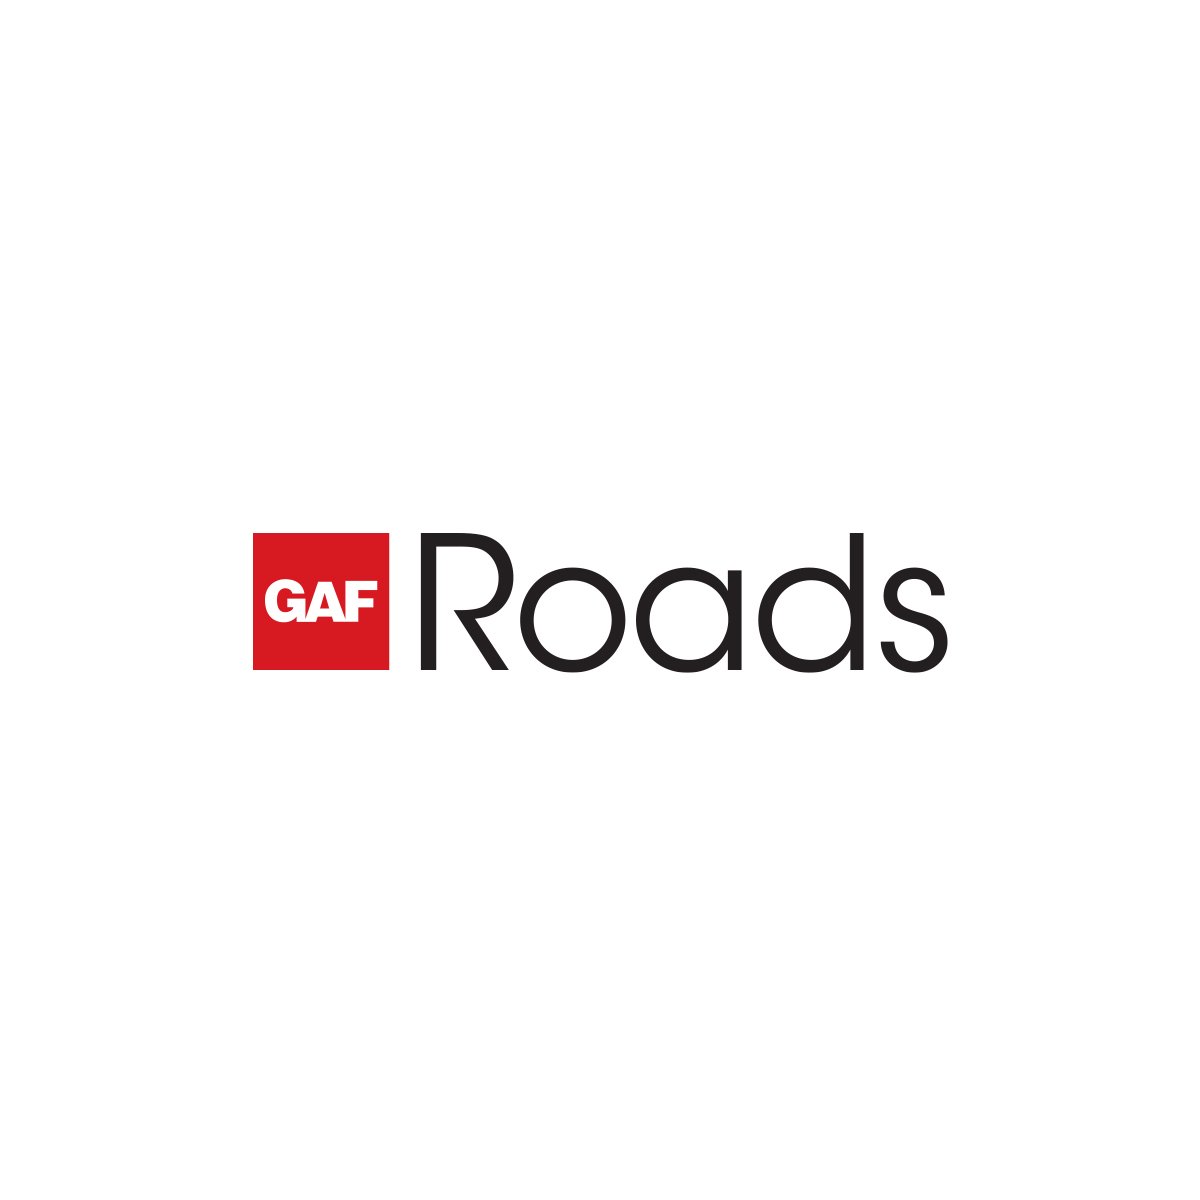 GAF Roads logo.jpg